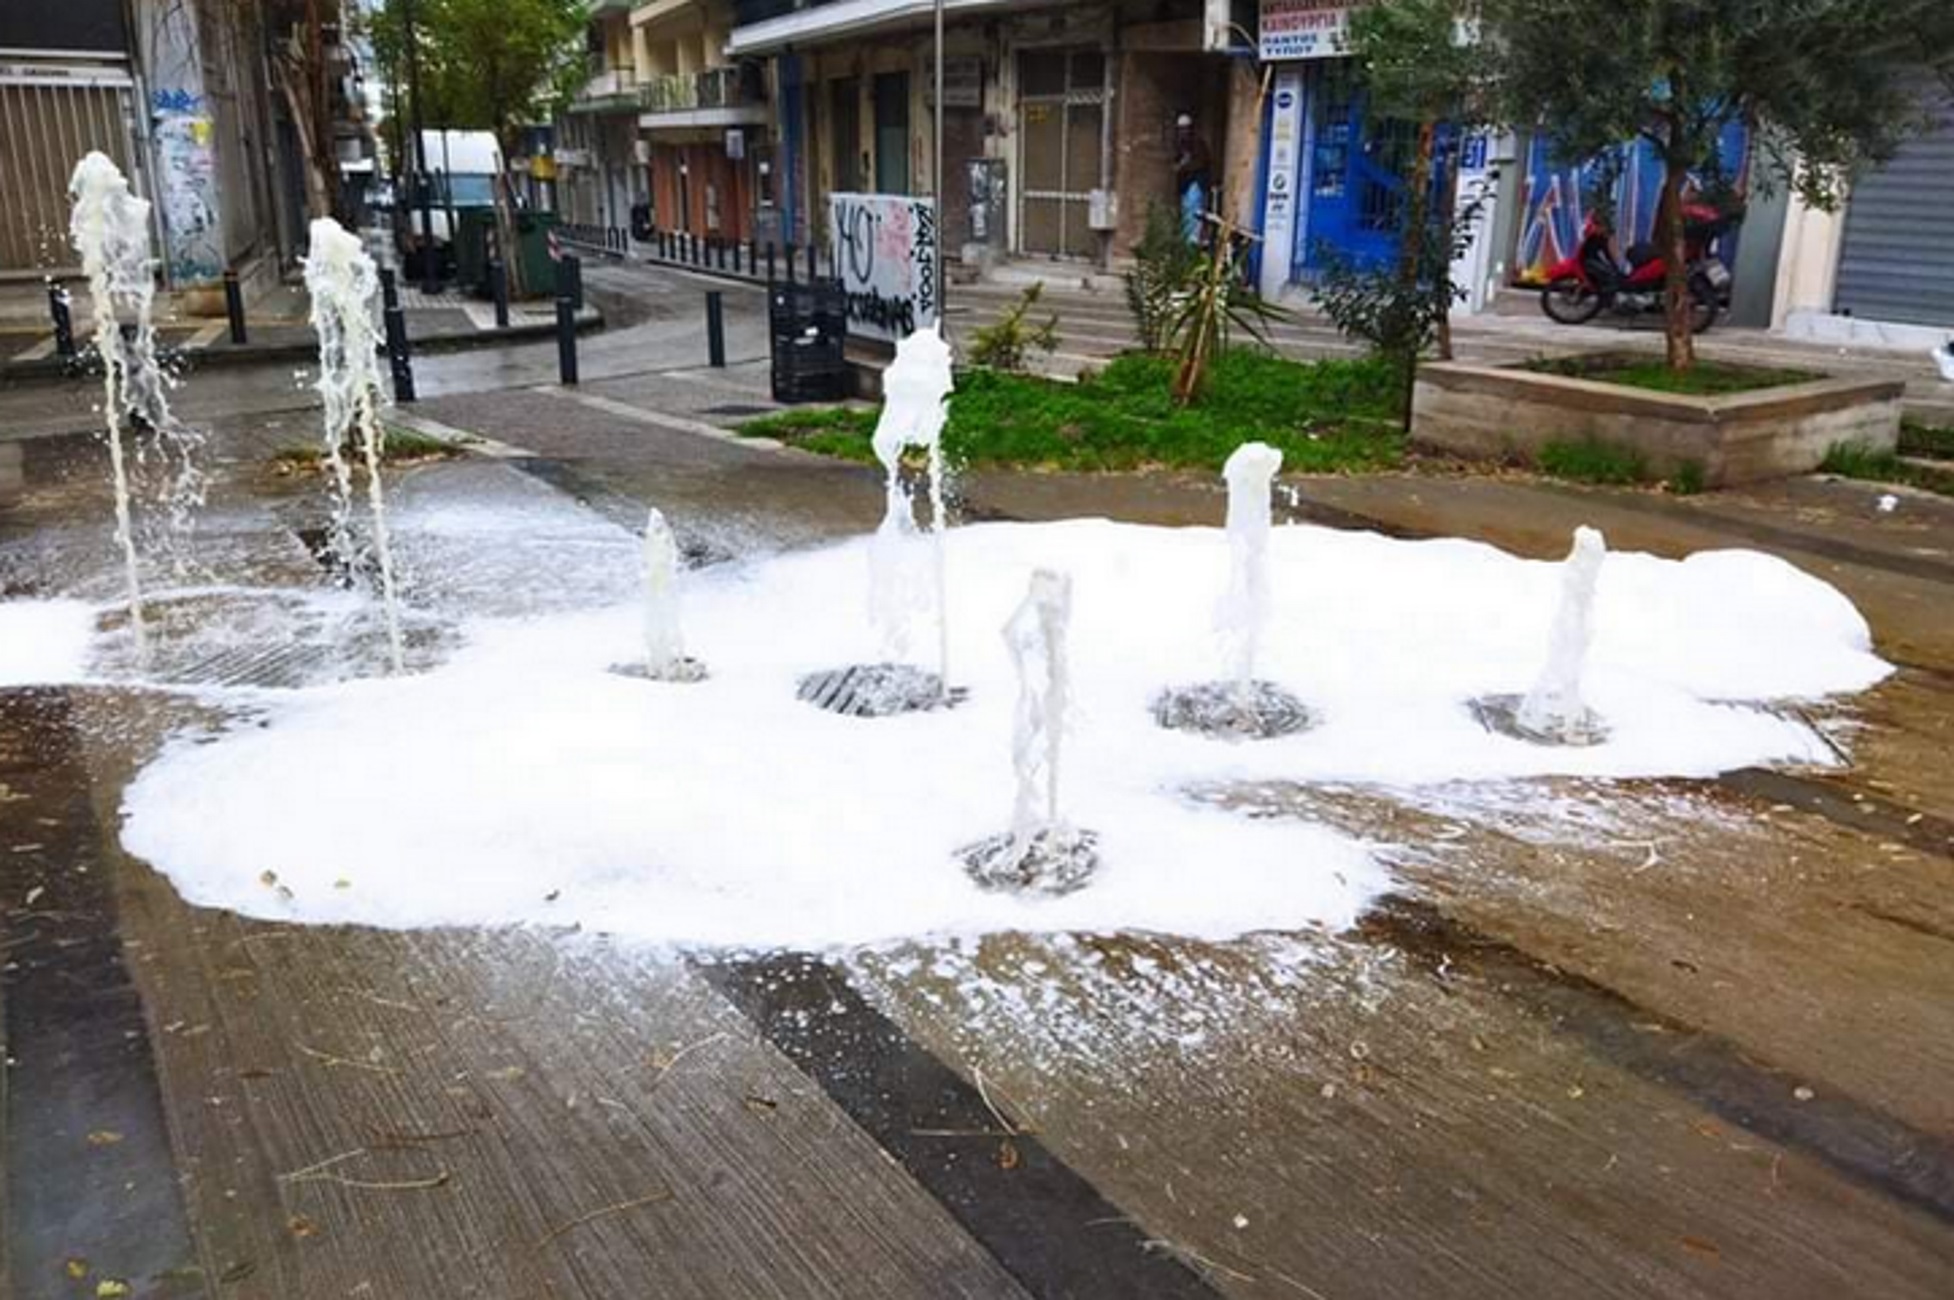 Θεσσαλονίκη: Άφρισε το συντριβάνι – Δείτε τις εικόνες στην πλατεία που κάνουν το γύρο του διαδικτύου